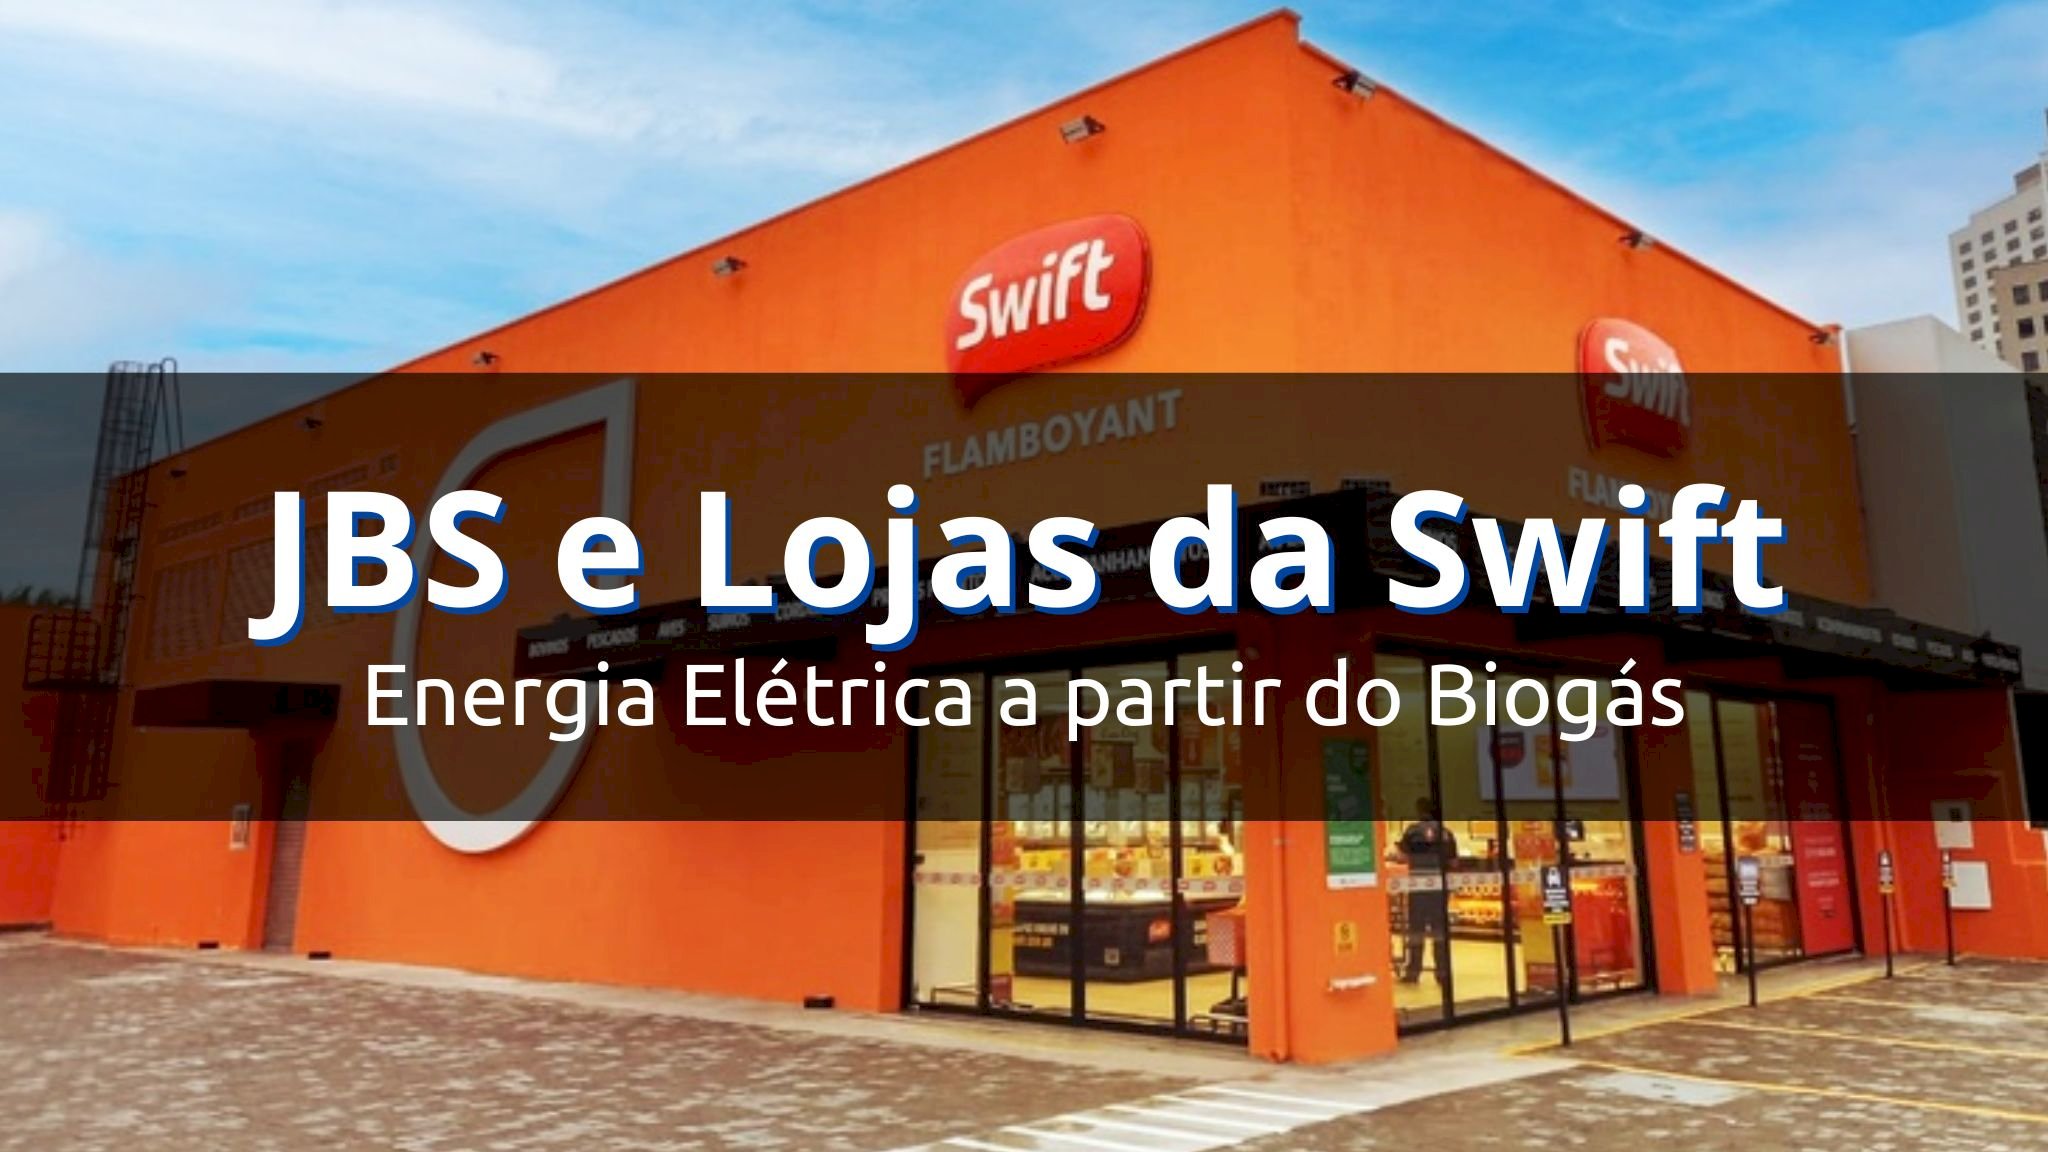 JBS abastecerá lojas da Swift com energia elétrica a partir do biogás